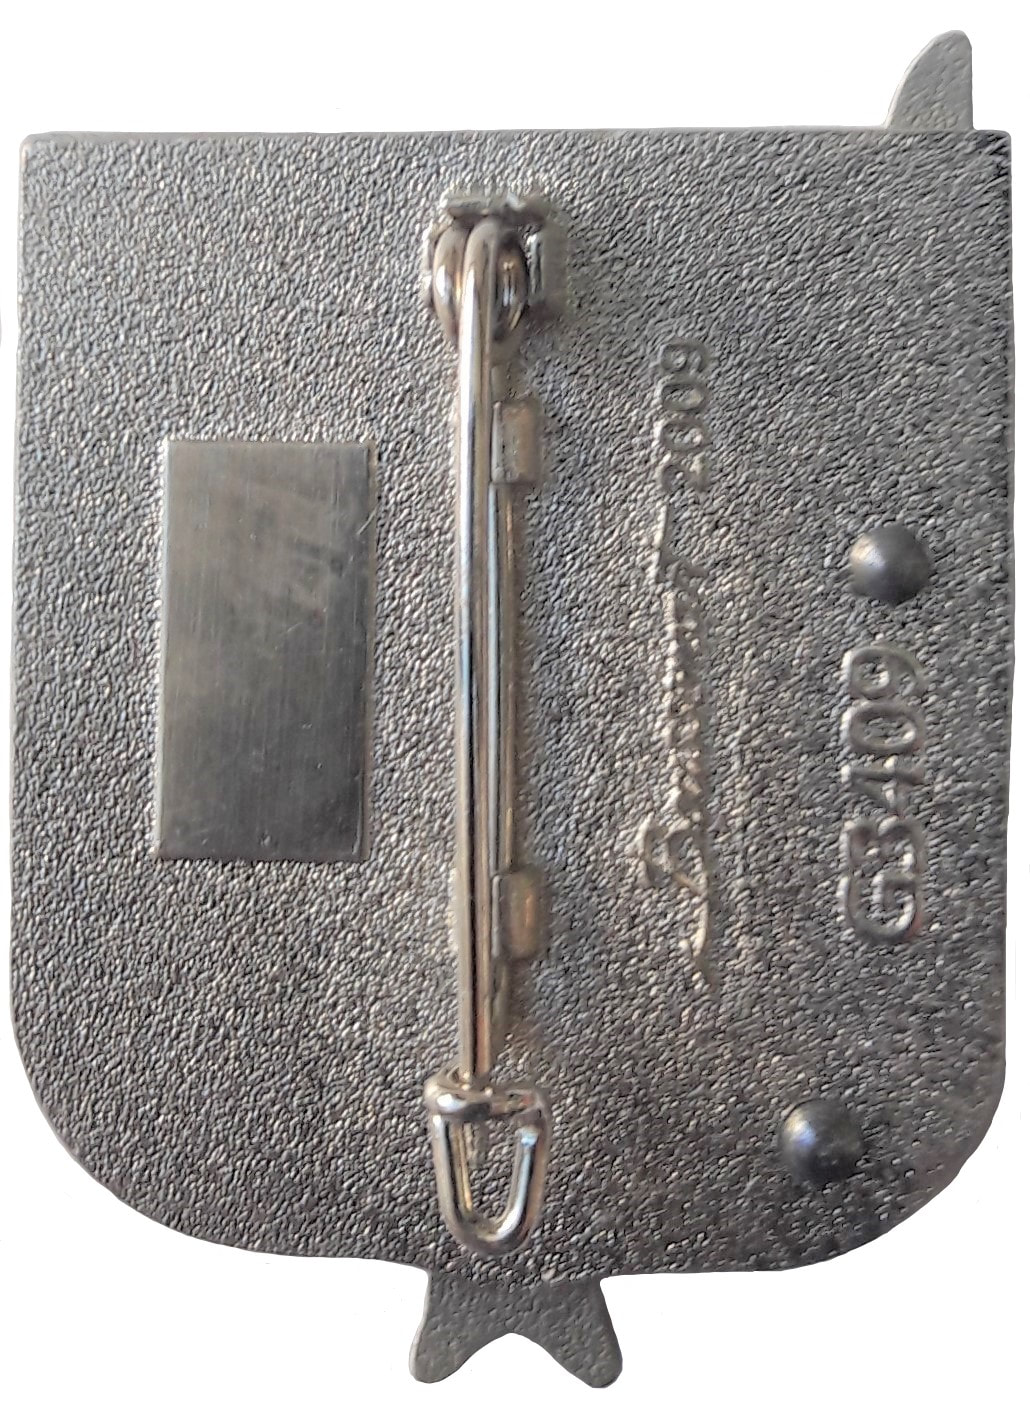 Dos insigne 3e RHC, type 2 : BOUSSEMART (2009) dos granuleux, plat et argenté, avec monture épingle à attache fixe. Cartouche pour numérotation. Alat.fr